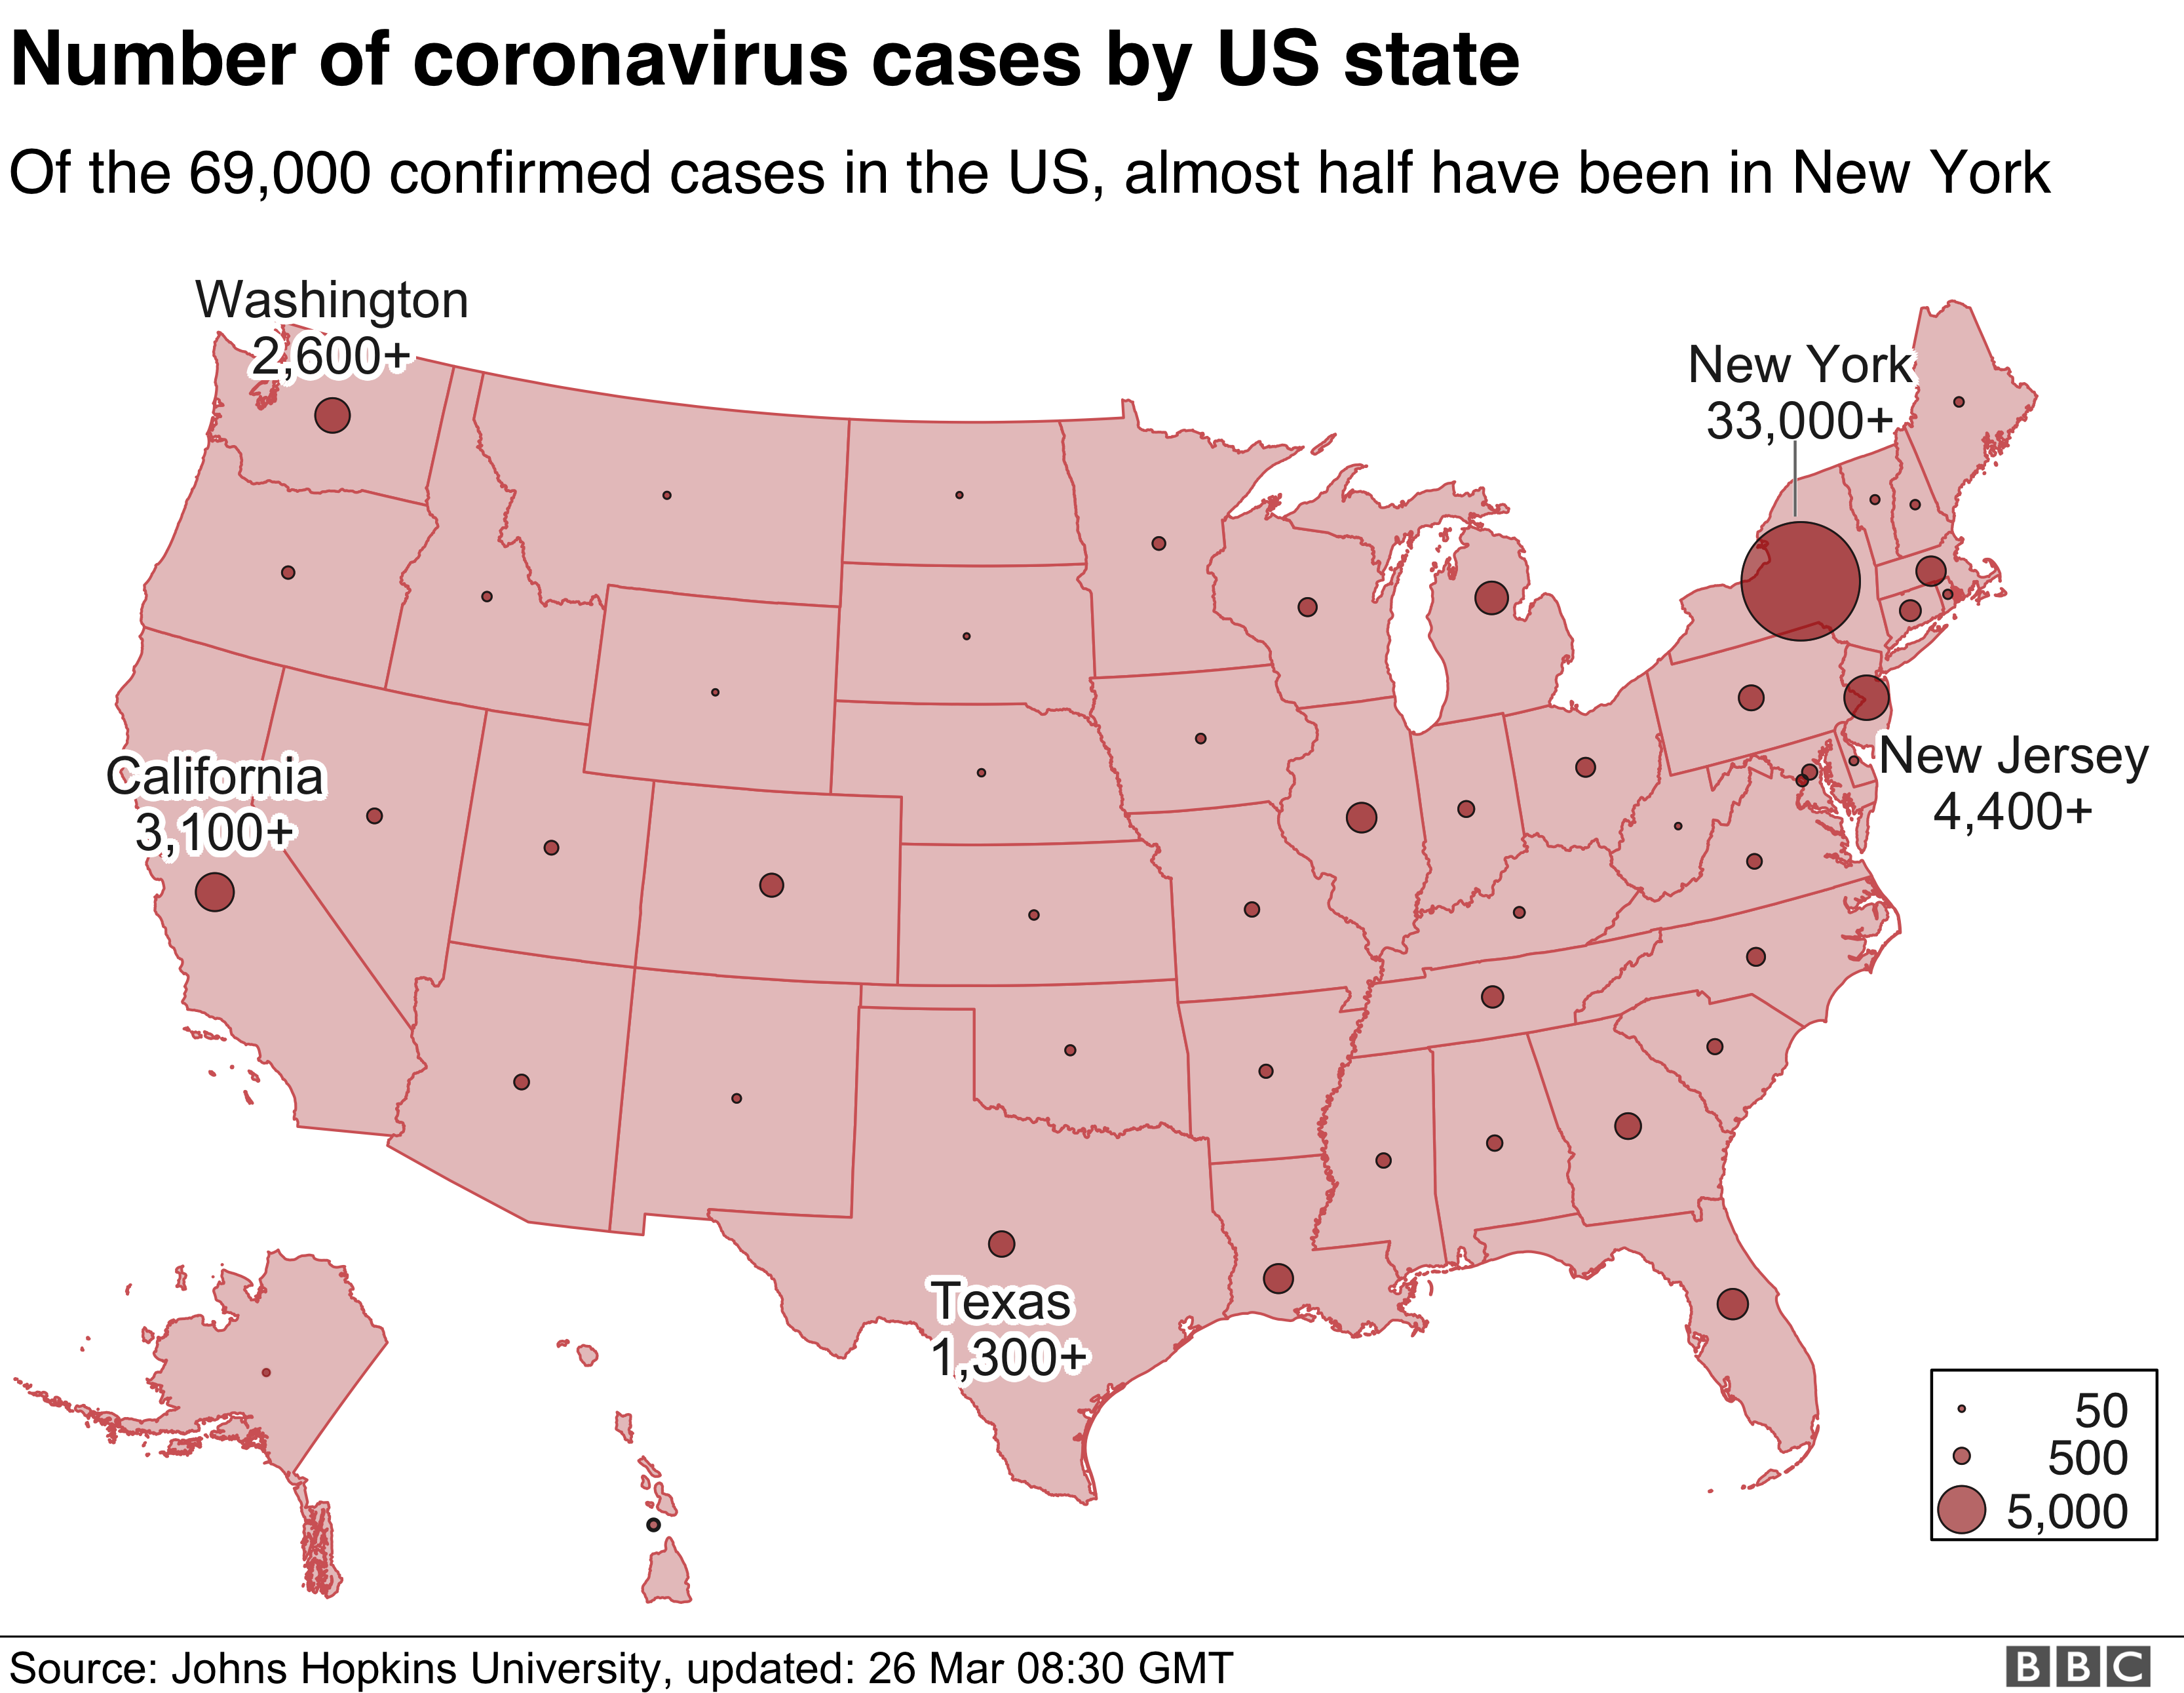 Карта, показывающая случаи заболевания в США по штатам - 33 000 человек в Нью-Йорке составляют более половины от общего количества по стране